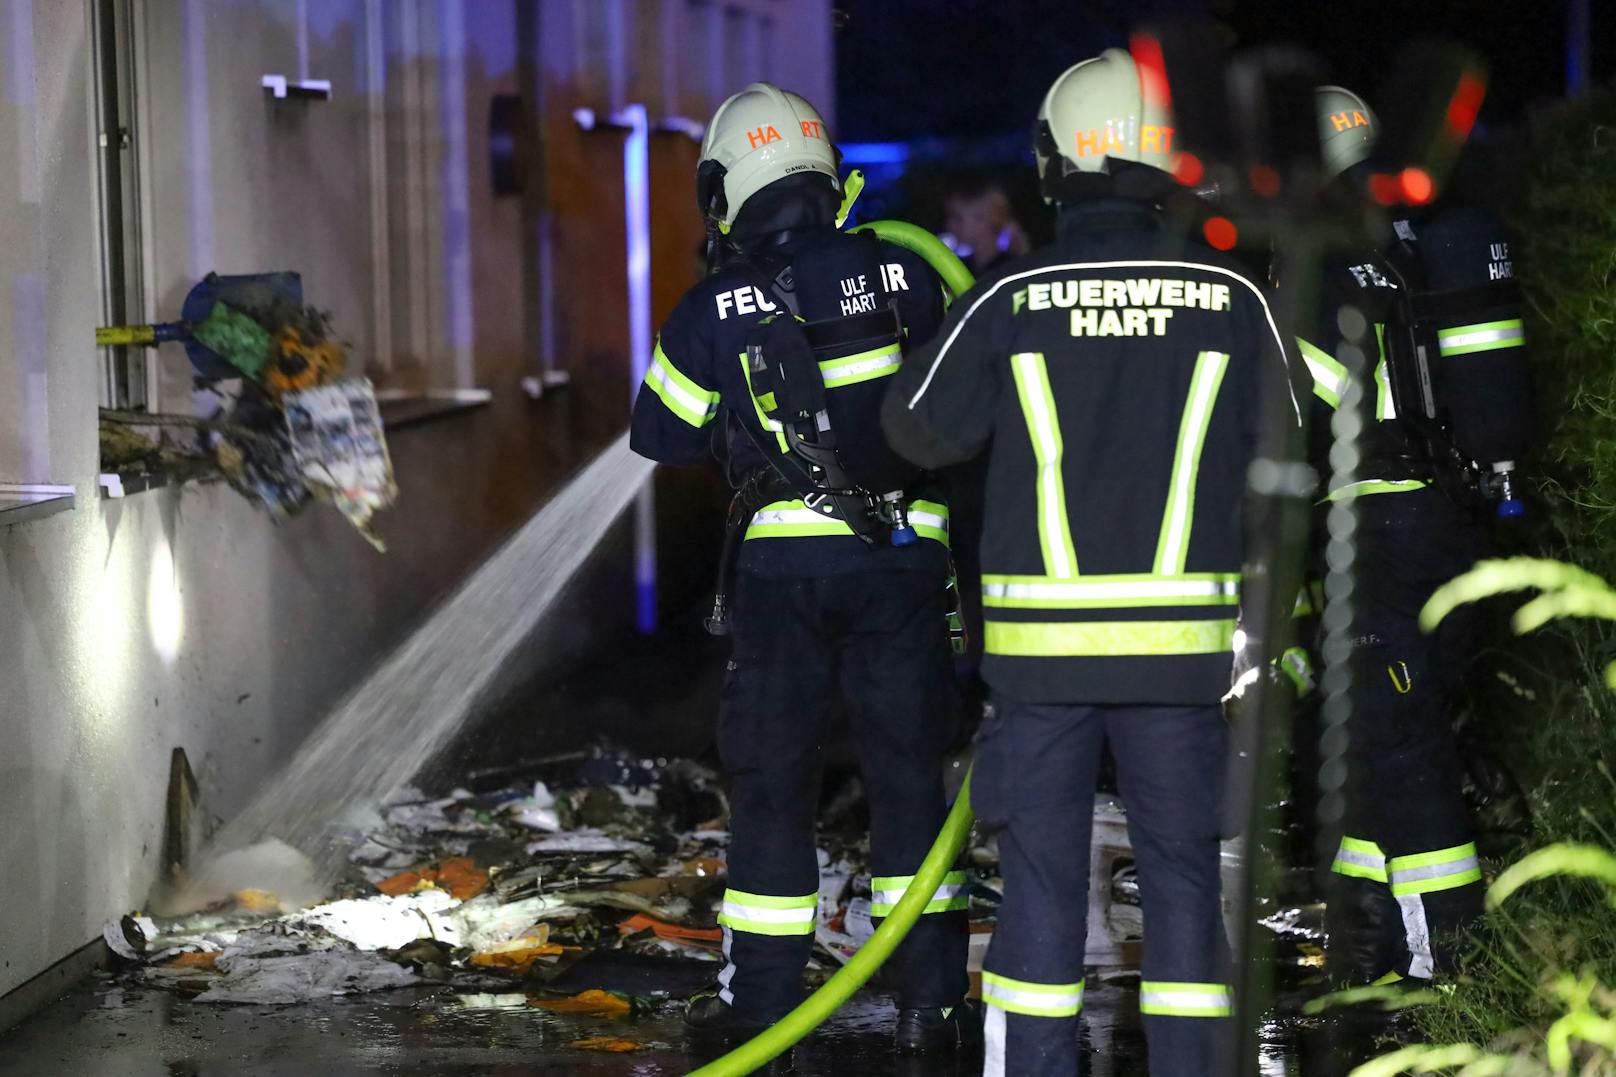 Ein Brand in einem Jugendzentrum in Leonding (Bezirk Linz-Land) hat am späten Dienstagabend einen Einsatz von drei Feuerwehren ausgelöst. Rettungsdienst und Polizei waren ebenso im Einsatz.